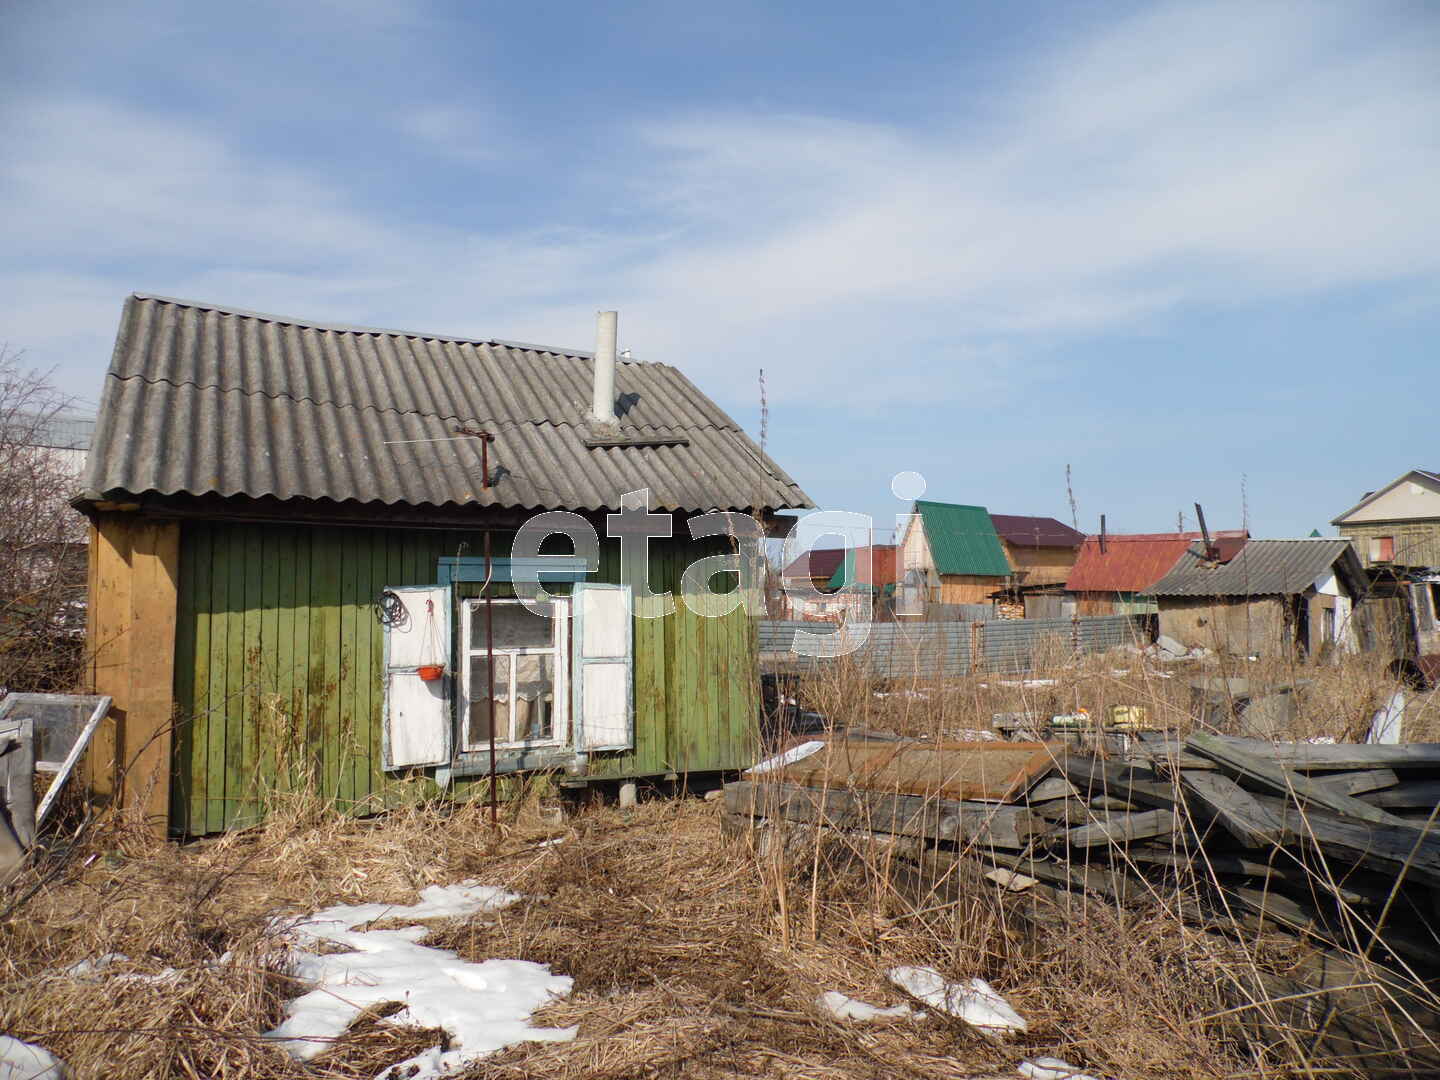 За 355 тысяч рублей можно купить крохотный домик на Салаирском тракте в СНТ «Сирень». Там есть баня, сарай и деревья. Есть электричество, но нет тепла и воды. До Тюмени отсюда ехать 15 минут